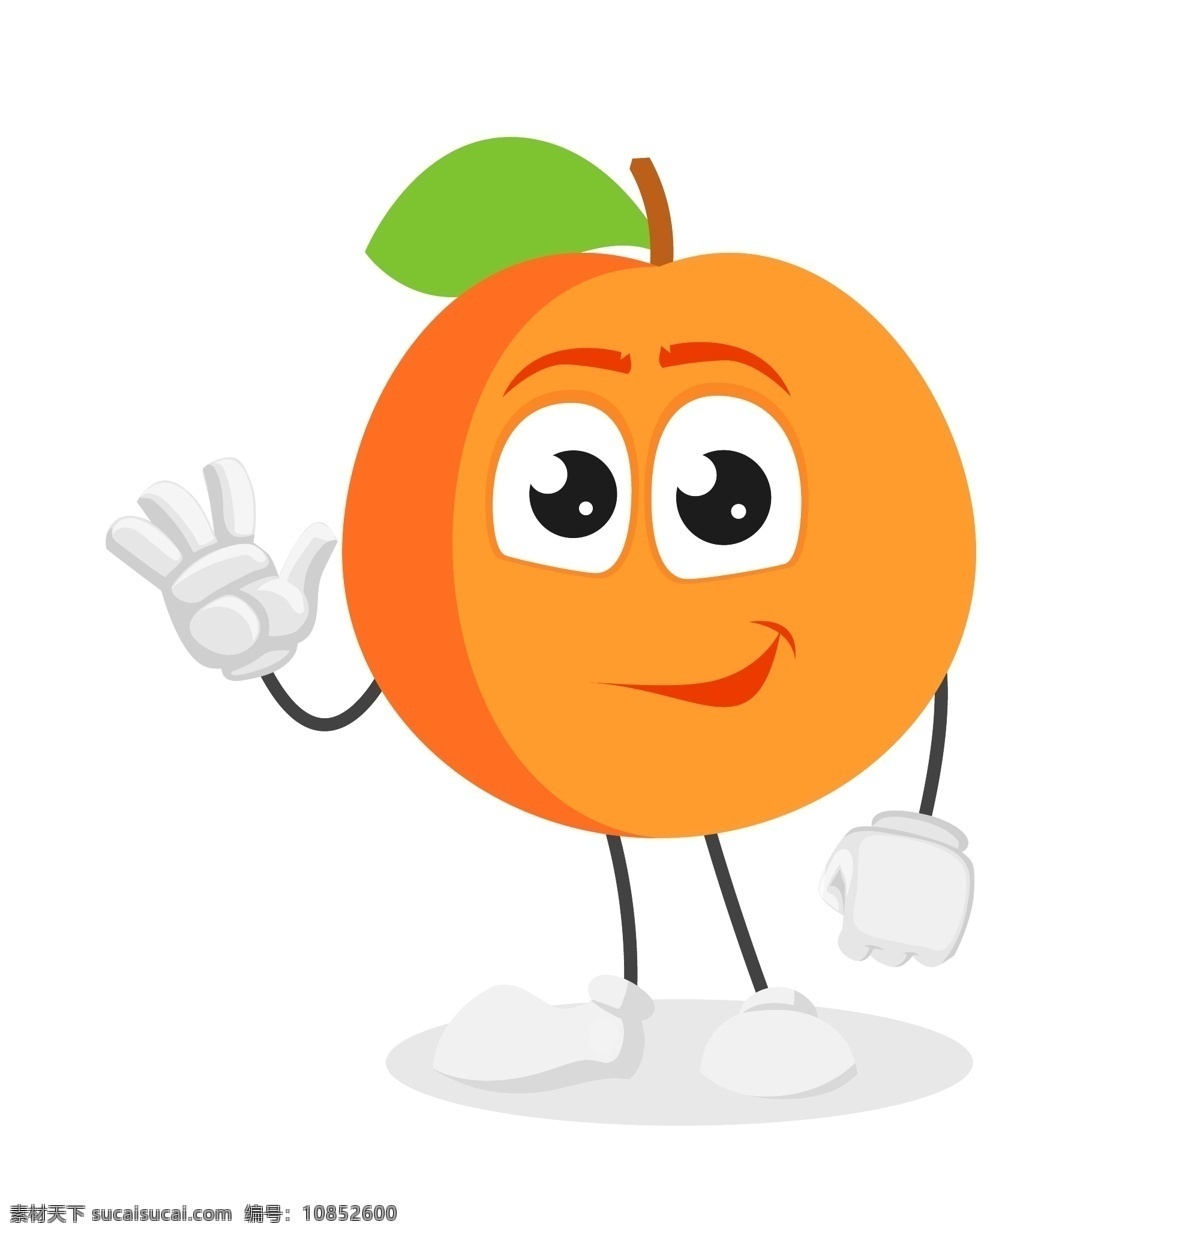 卡通橘子 卡通 橘子 水果 动画 动漫 柑橘 标志图标 其他图标